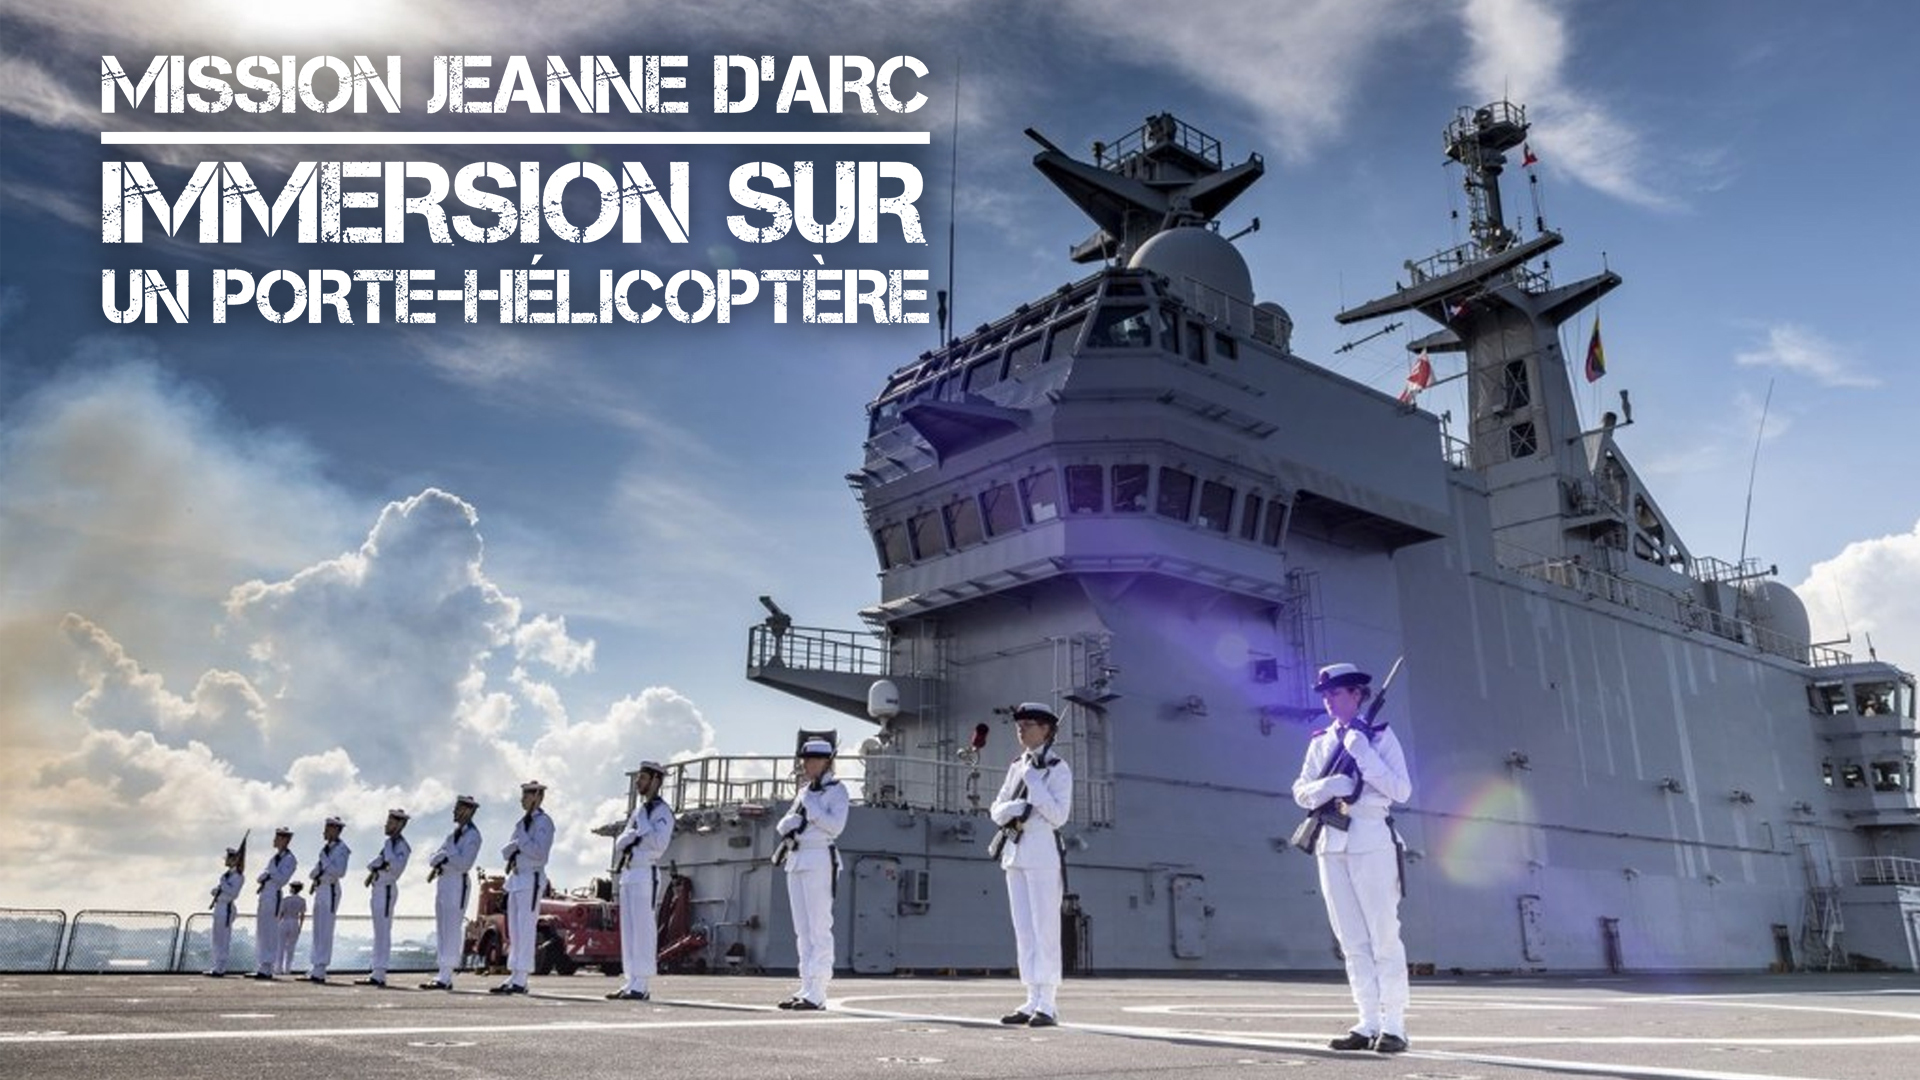 Replay Mission Jeanne d'Arc immersion sur un portehélicoptère voir